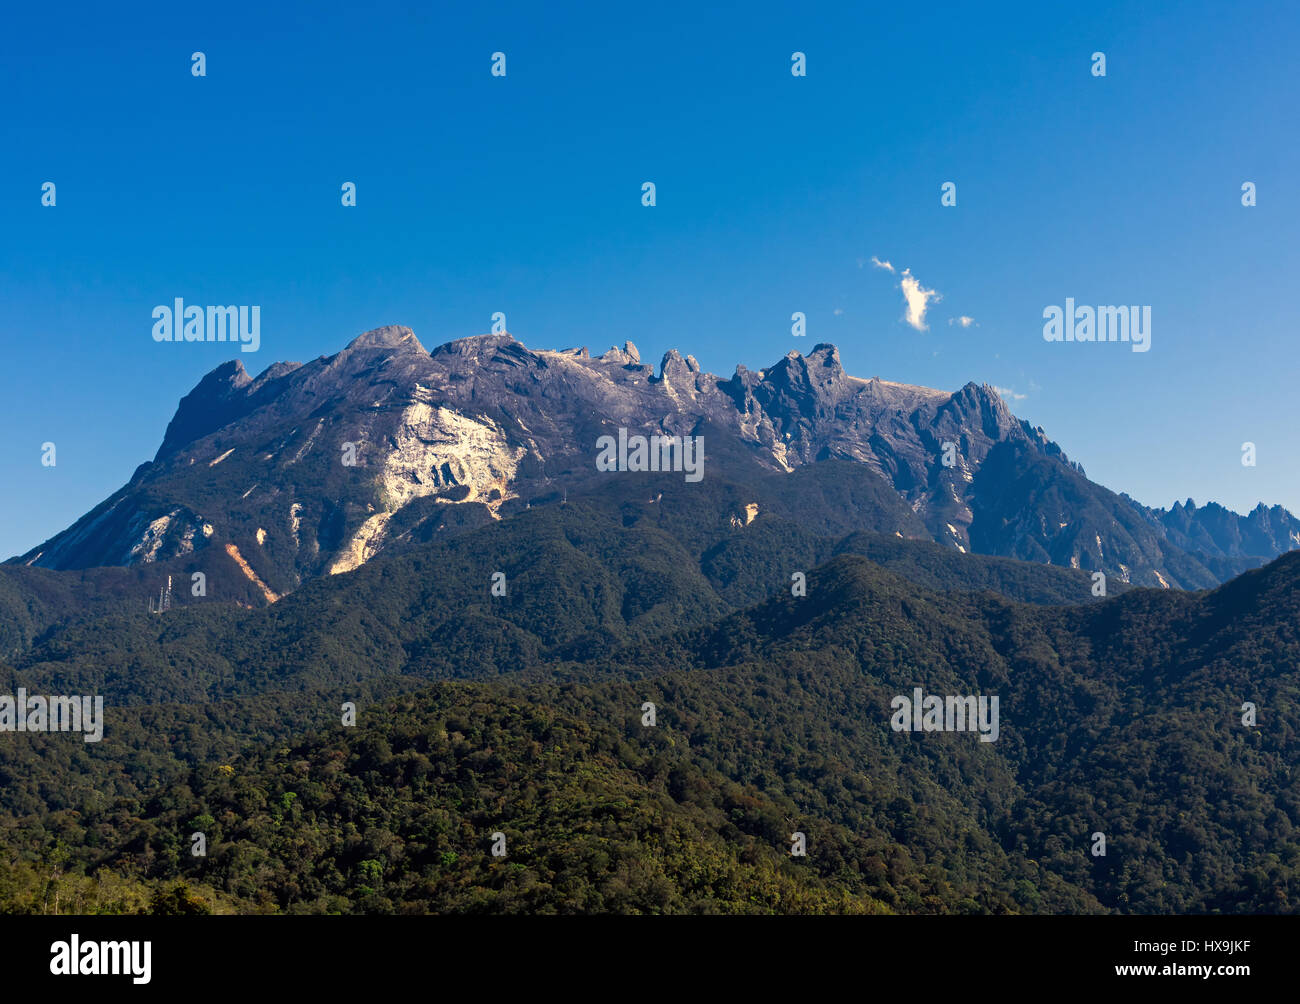 Blauer Himmel Landschaft des Mount Kinabalu in Sabah, Borneo, Malaysia schön. Stockfoto